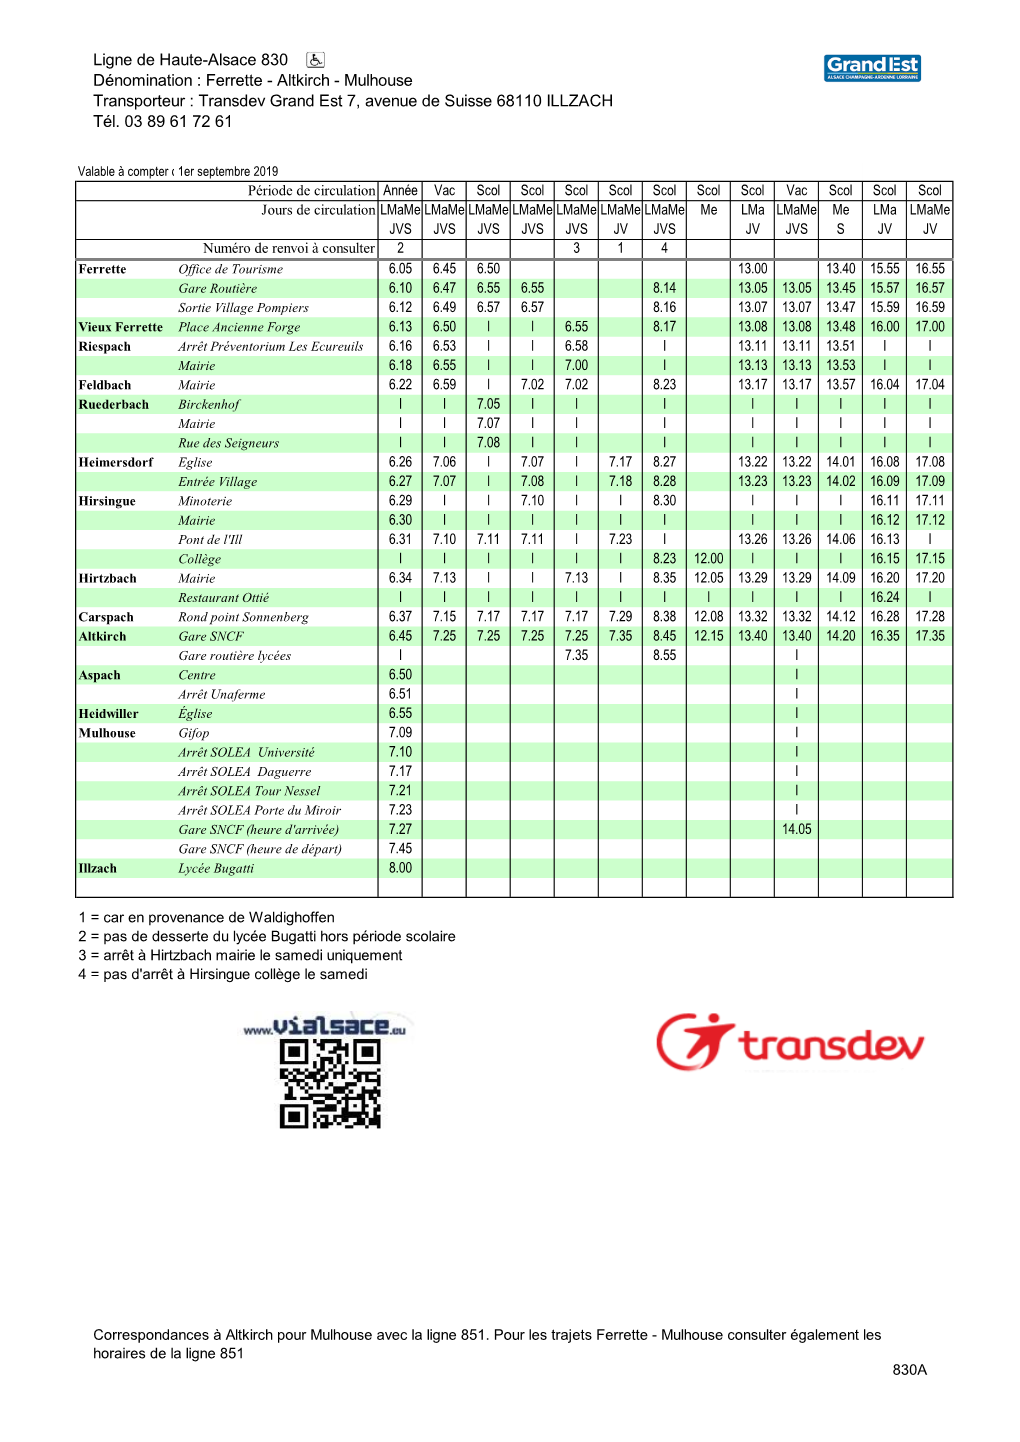 Ligne De Haute-Alsace 830 Dénomination : Ferrette - Altkirch - Mulhouse Transporteur : Transdev Grand Est 7, Avenue De Suisse 68110 ILLZACH Tél